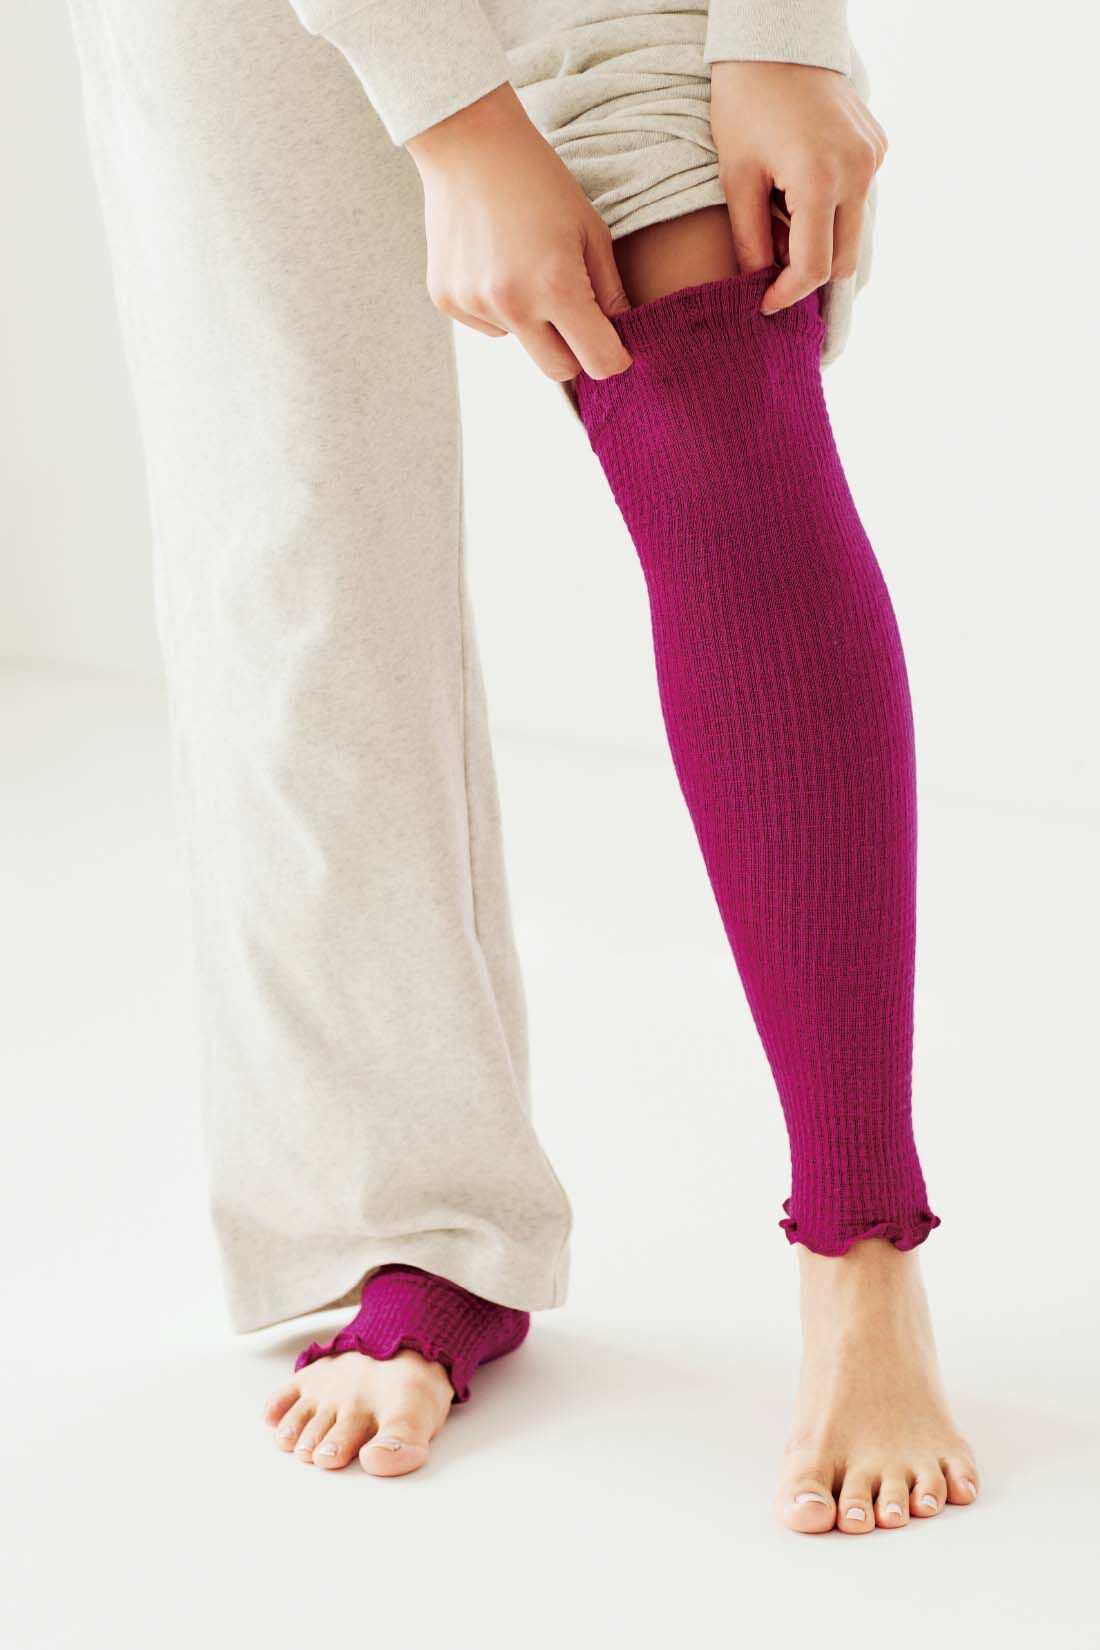 IEDIT|たっぷりシルクでやさしくフィット　ふわふわロングレッグウォーマー〈ピンク〉【おはだが気になるみんなへ】|よく伸びる編み方と長め丈で、ひざまで暖かにカバー。